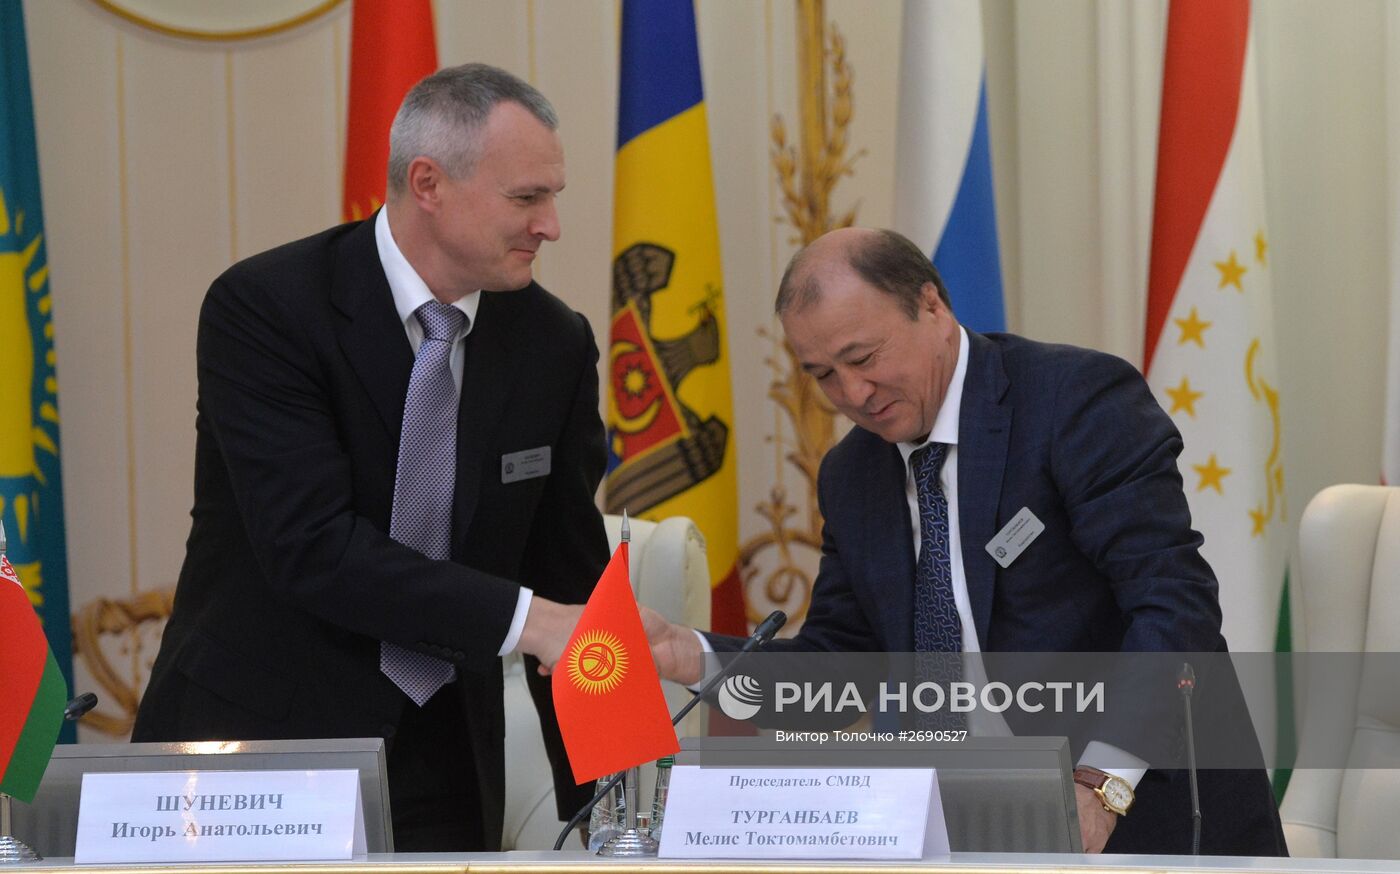 Заседание Совета министров внутренних дел государств-участников СНГ в Минске